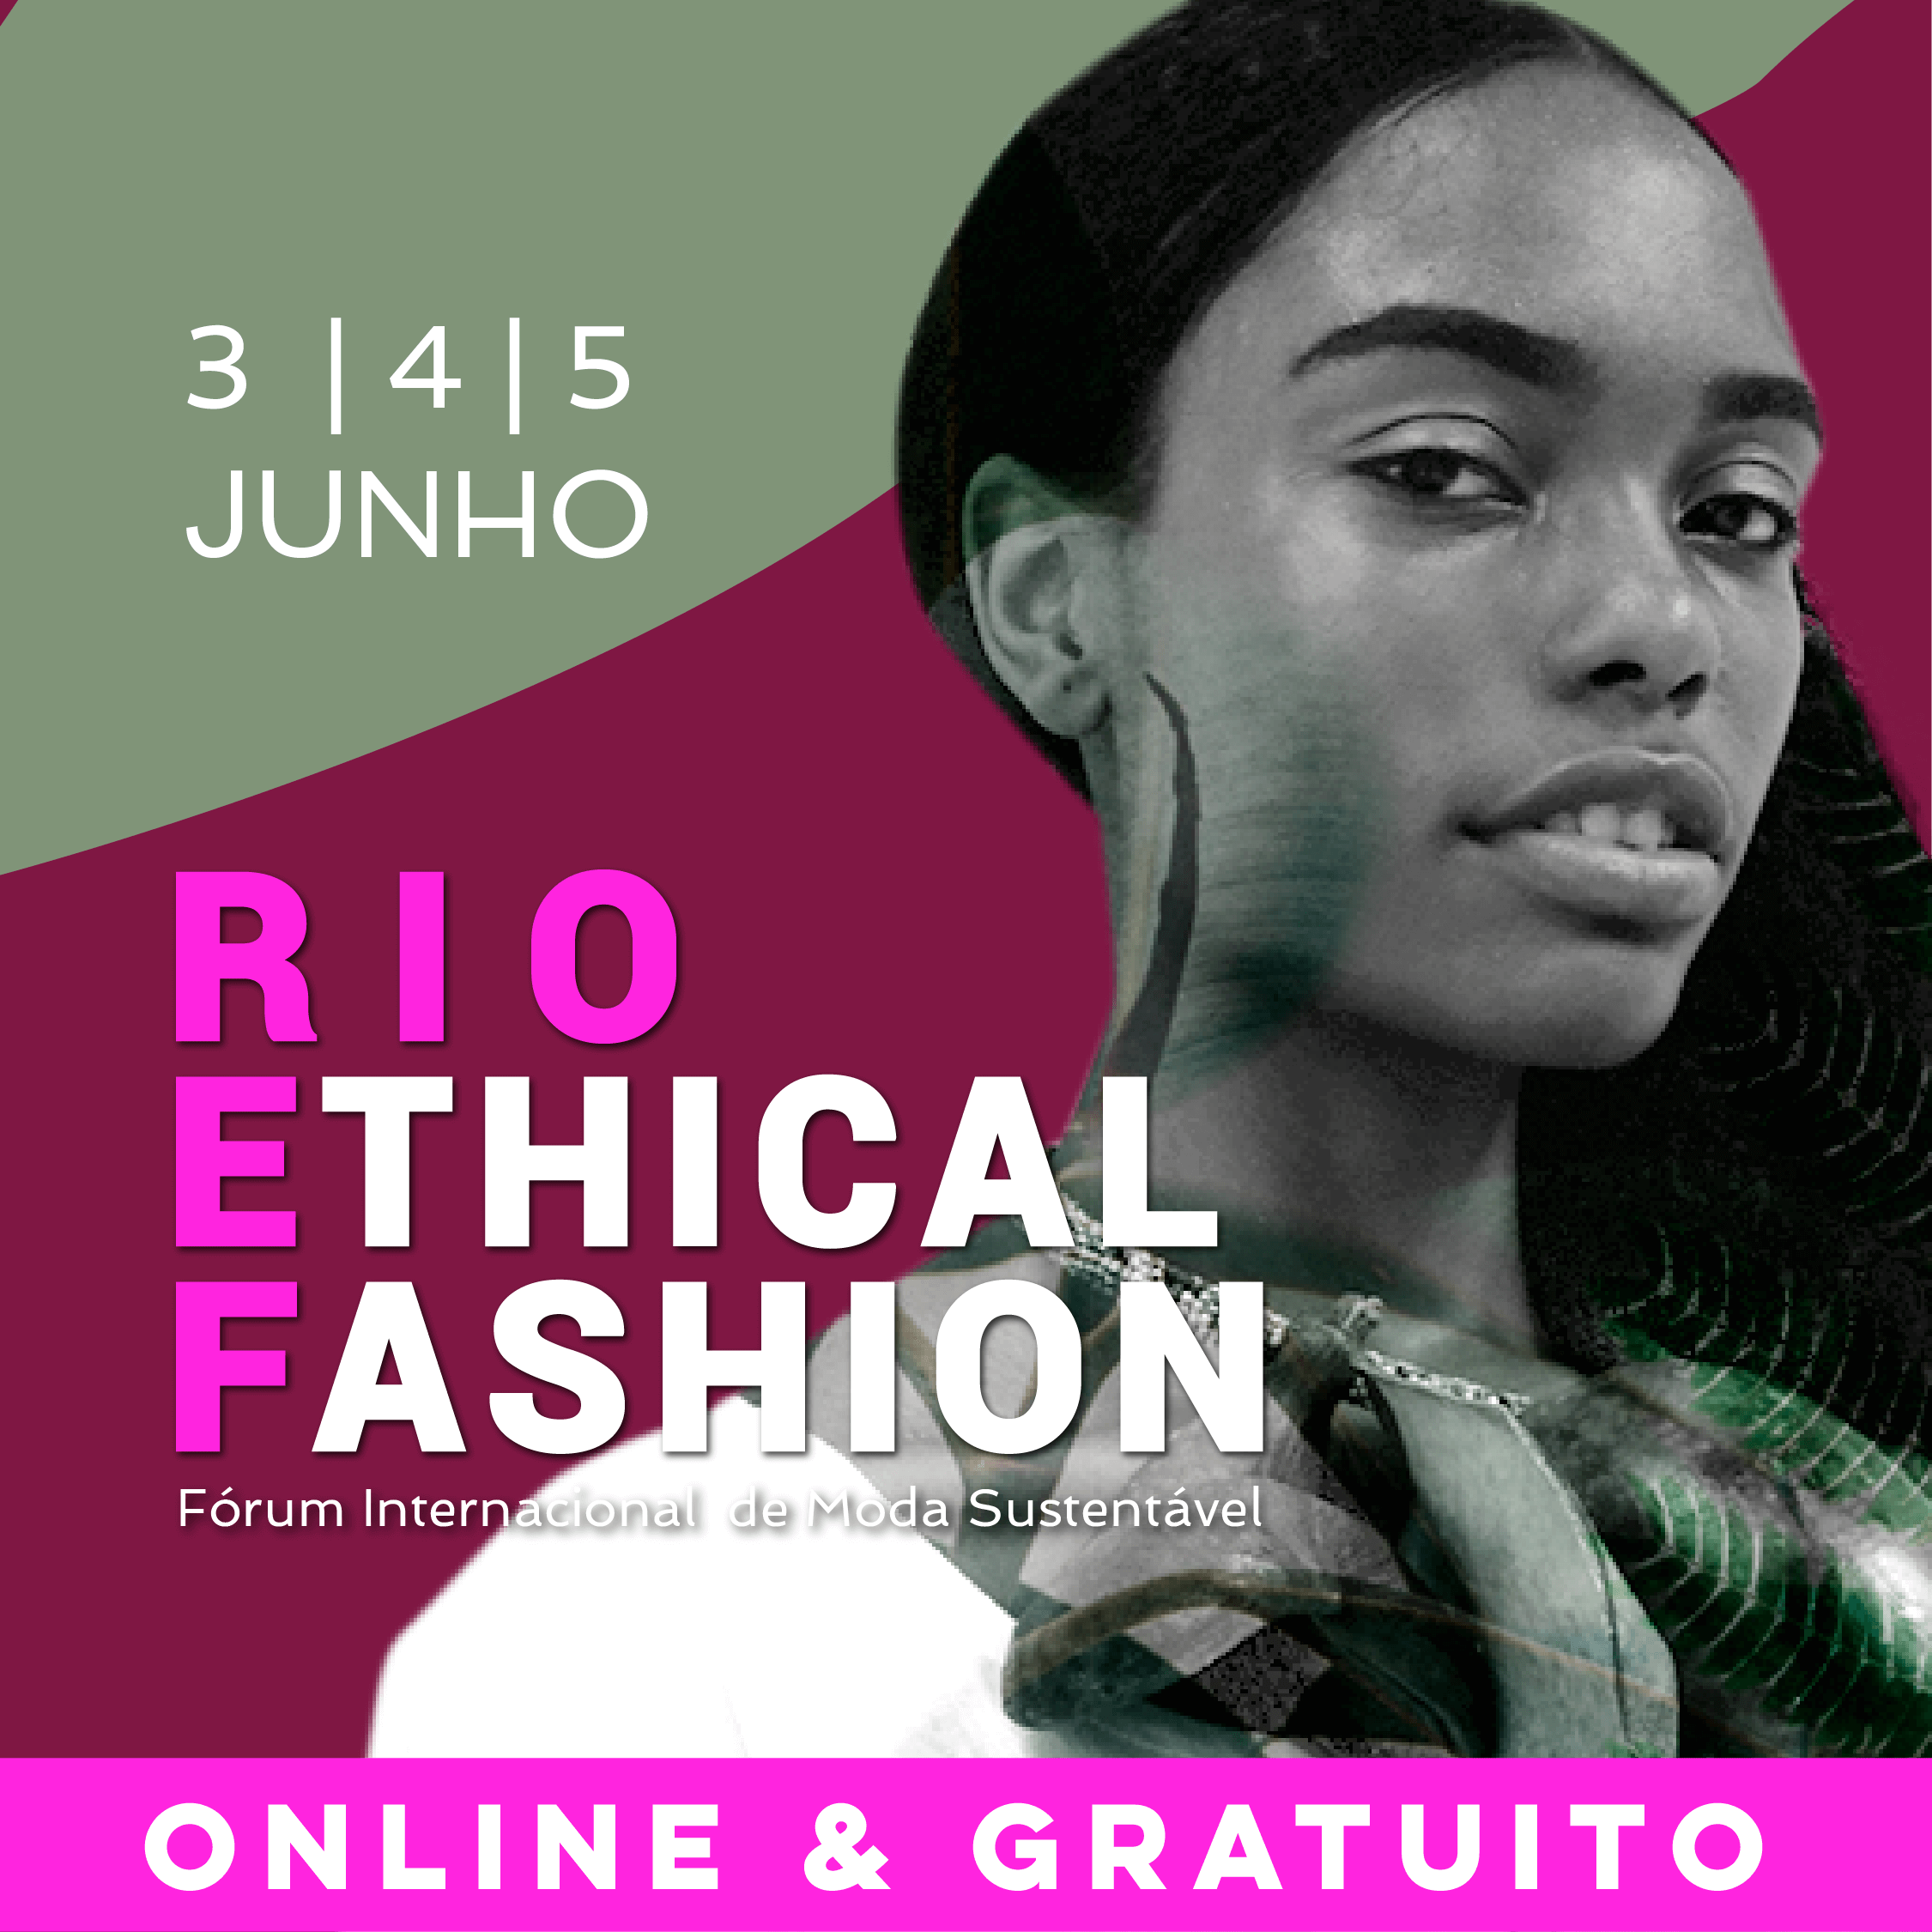 Rio Ethical Fashion 2021 chega à sua 3ª edição e acontece nos dias de 3, 4 e 5 de junho